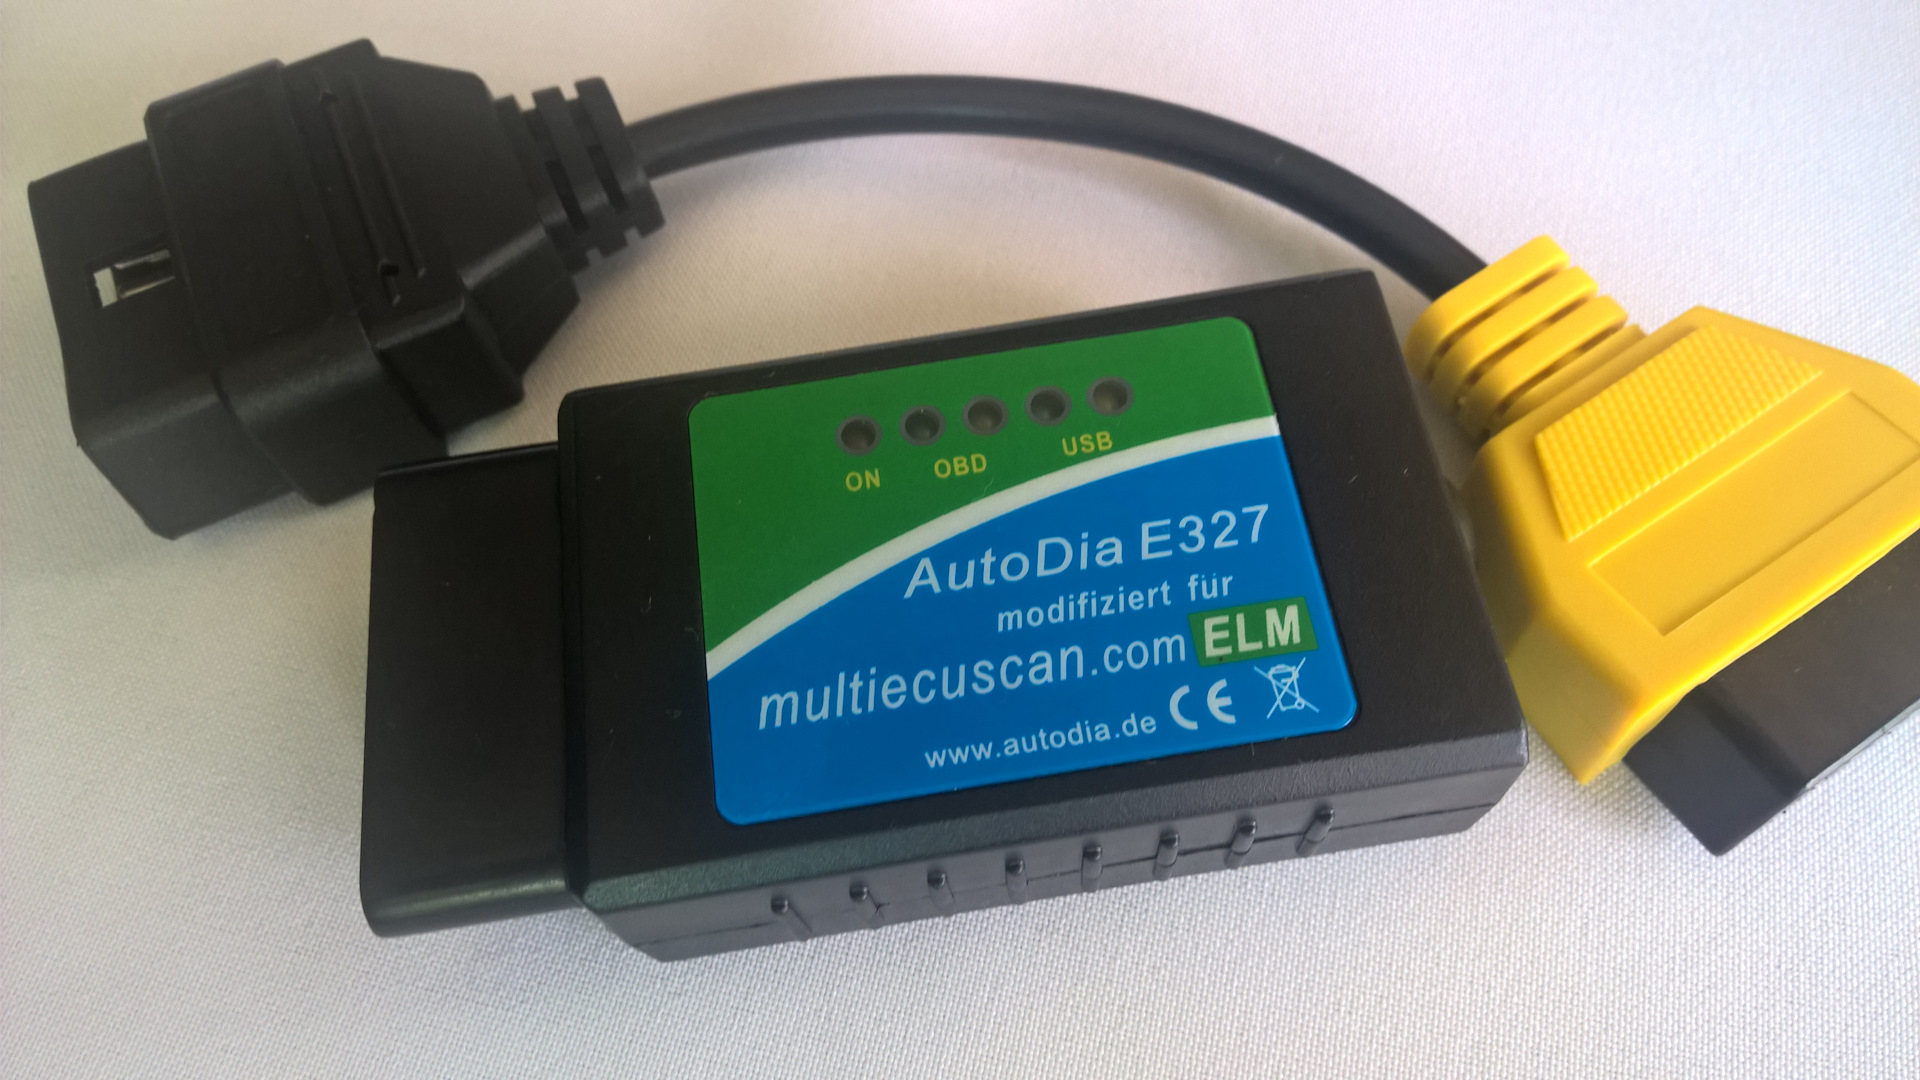 Елм 327 версия 1.5 поддерживаемые. Elm327 желтый переходник Фиат. Elm 327 USB для Фиат Палио 1.2. Elm327 Орион. Переходник для elm327 Fiat Albea.